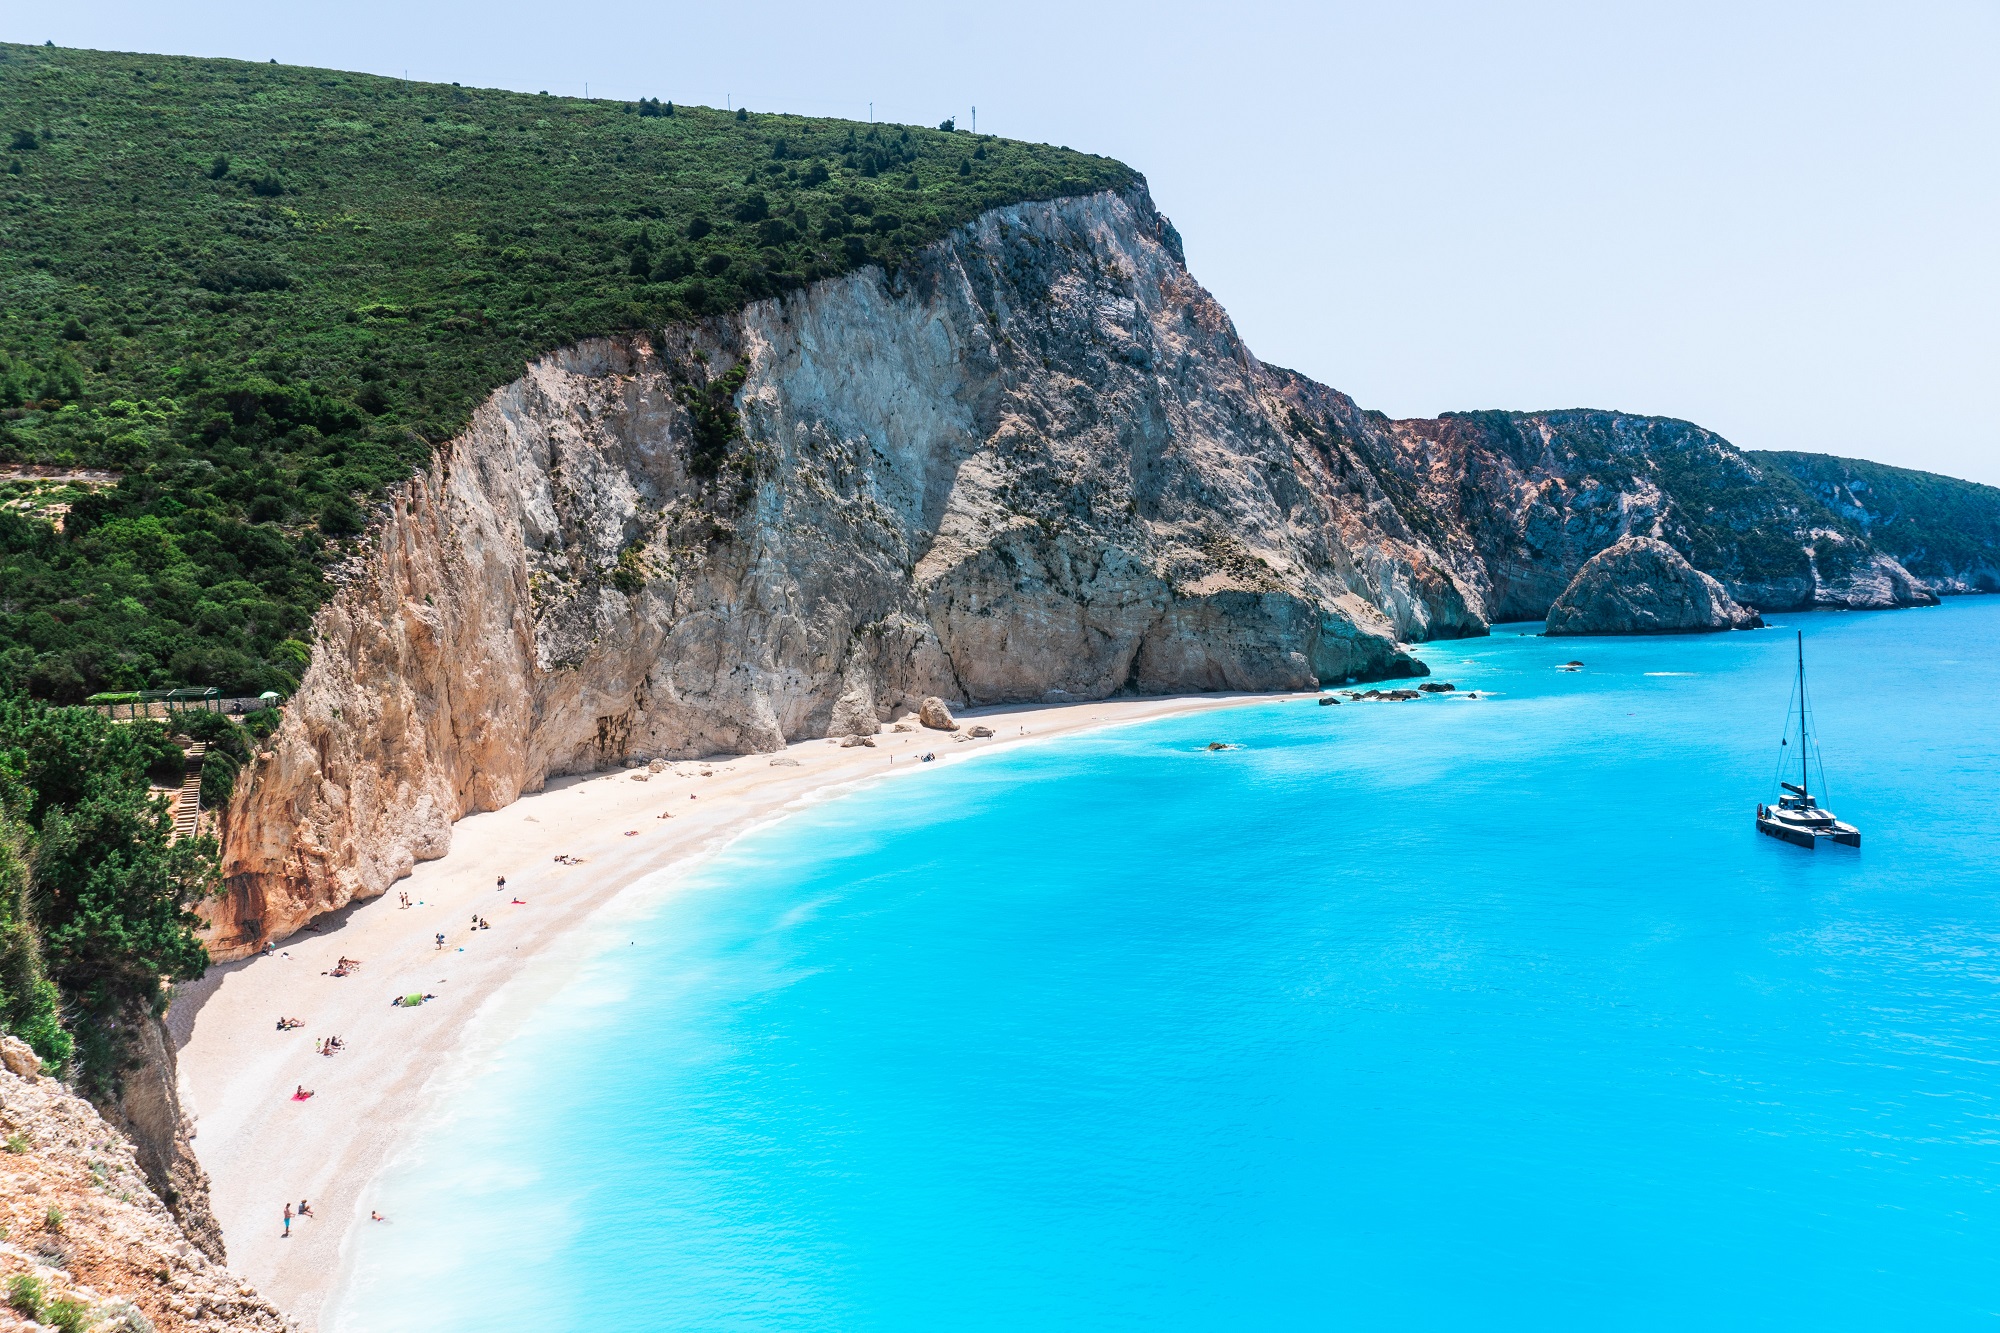 Λευκάδα: Στους 3 καλύτερους ιστιοπλοϊκούς προορισμούς για αρχάριους, σύμφωνα με το National Geographic | travel.gr